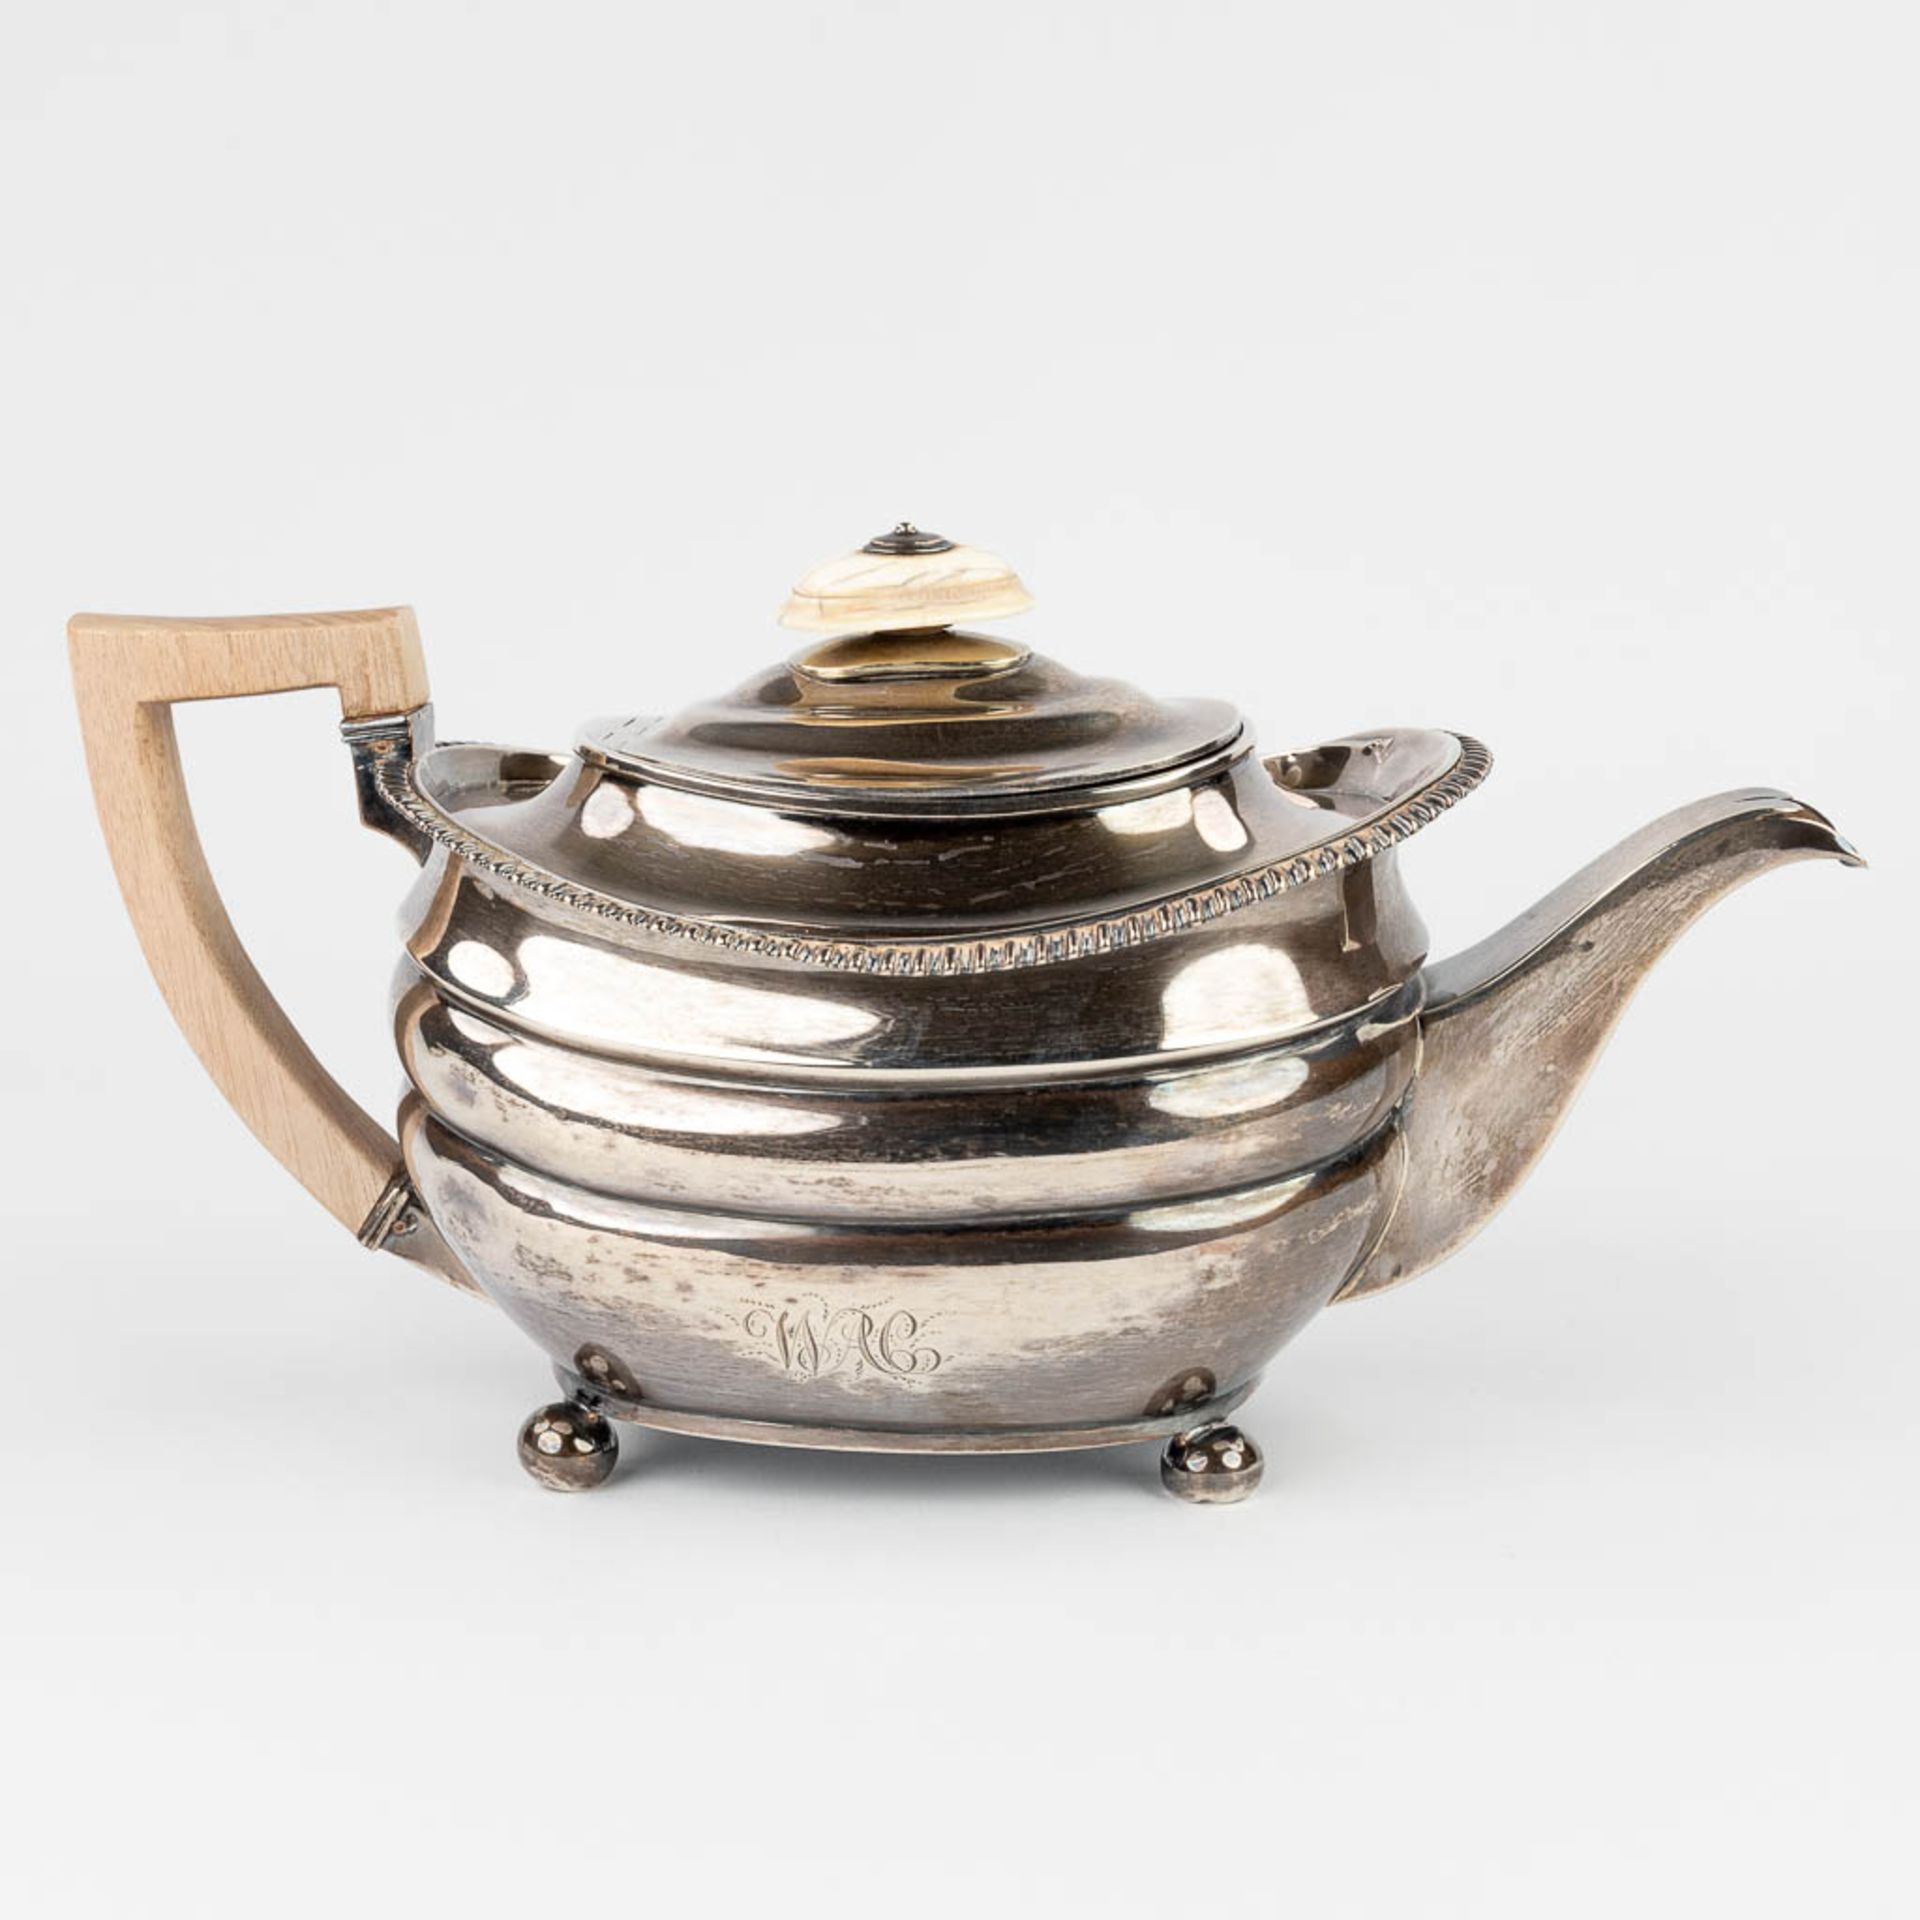 An English made silver teapot. (13,5 x 28 x 15cm)